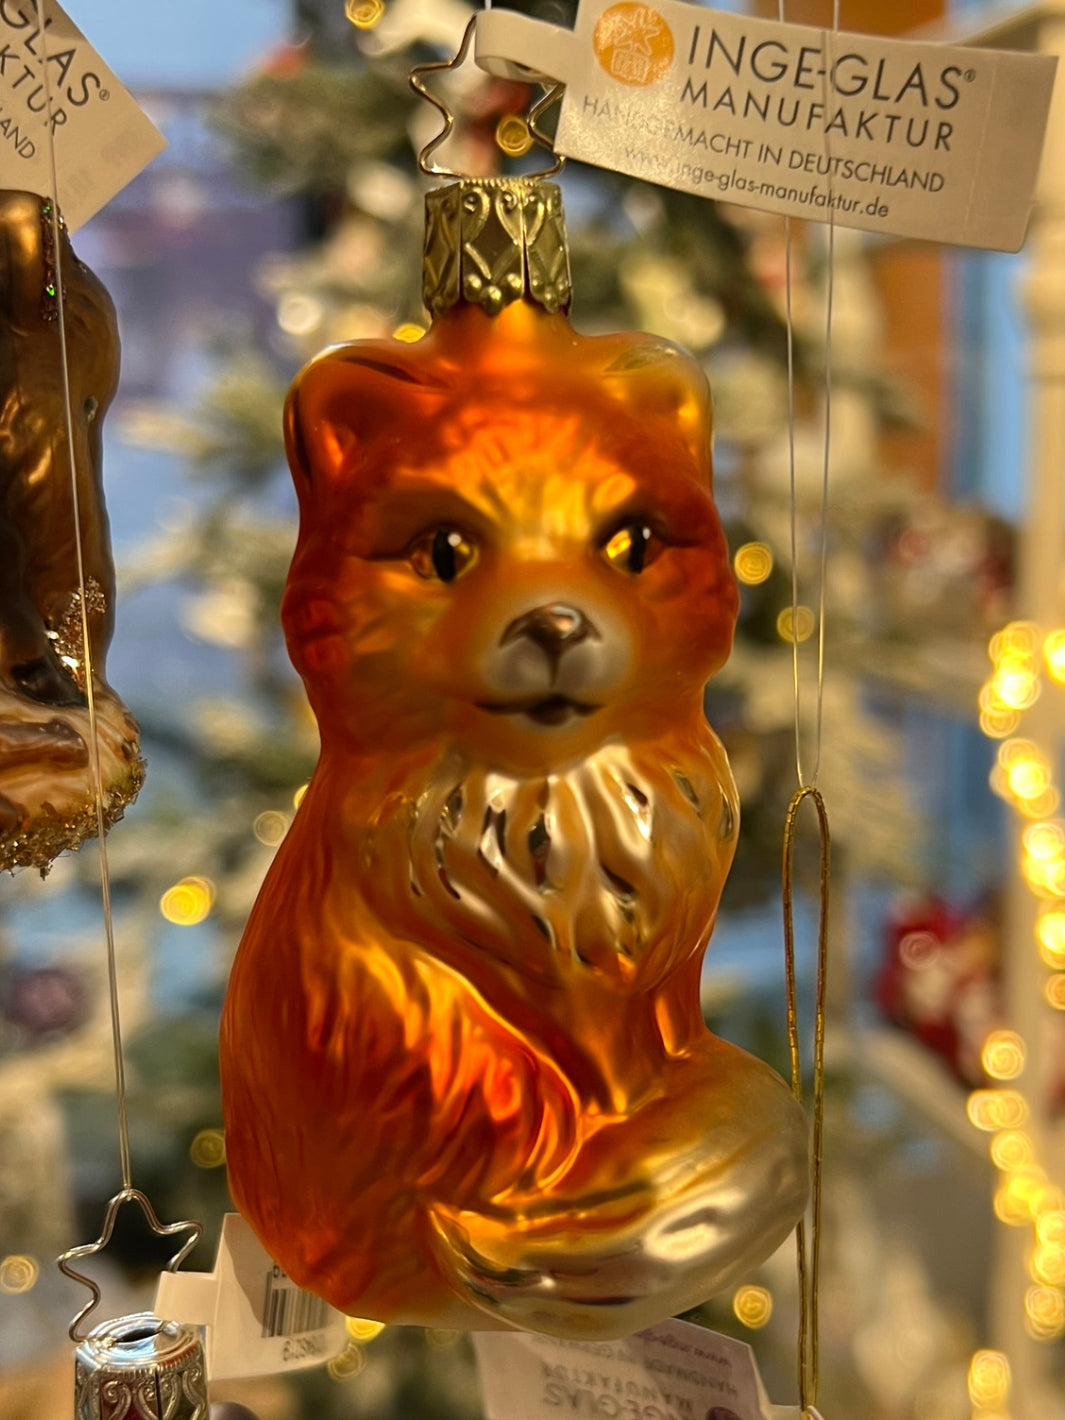 Fuchs von Inge Glas für den Weihnachtsbaum